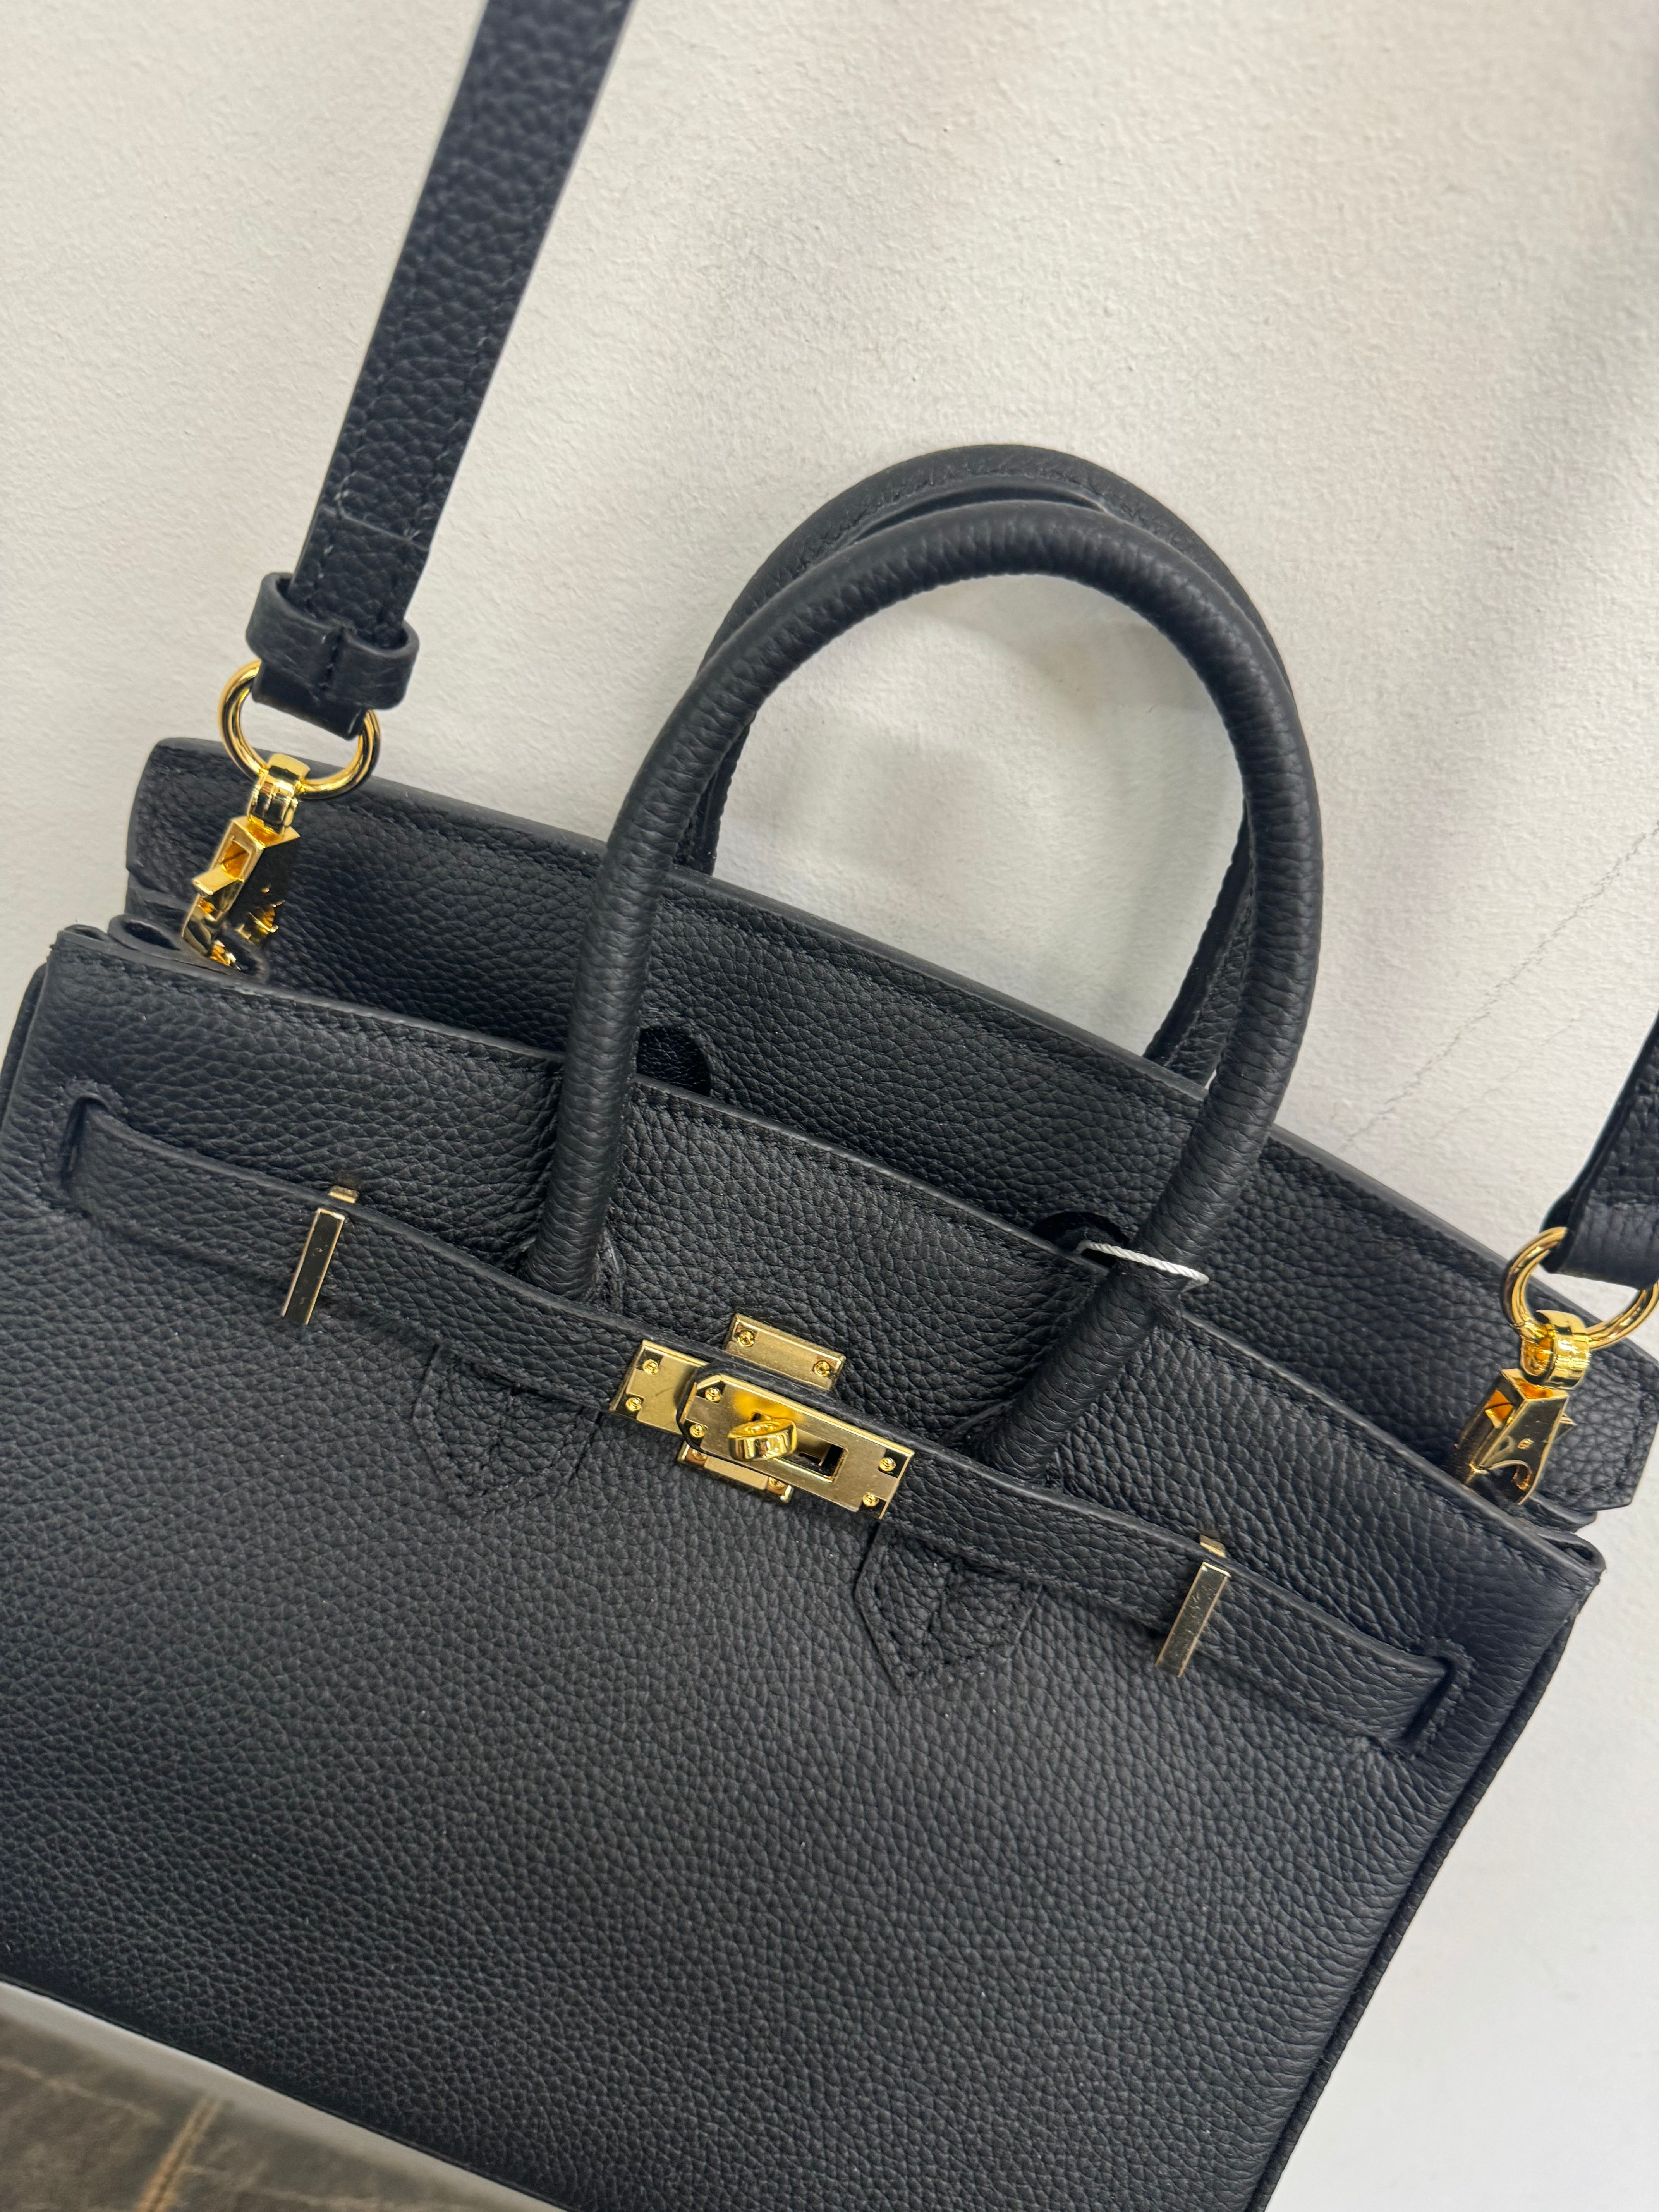 Jellicoe Priscilla Leather Handbag Black - Small